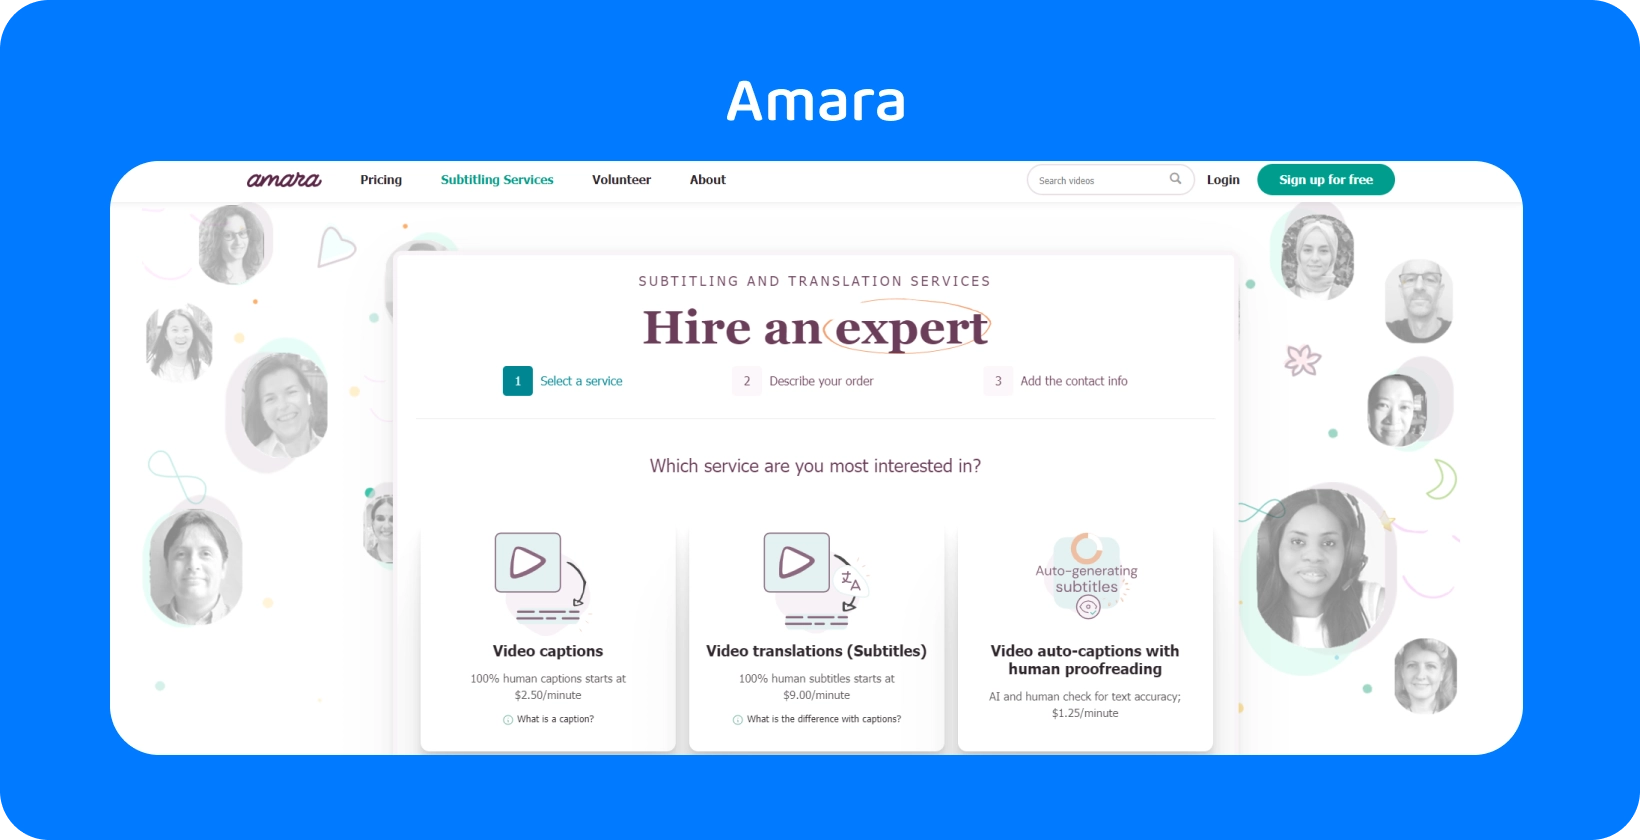 تعرض صفحة الويب الخاصة ب Amara كيفية إضافة ترجمات بسهولة إلى مقاطع الفيديو عبر الإنترنت ، مما يعزز إمكانية وصول المشاهدين.